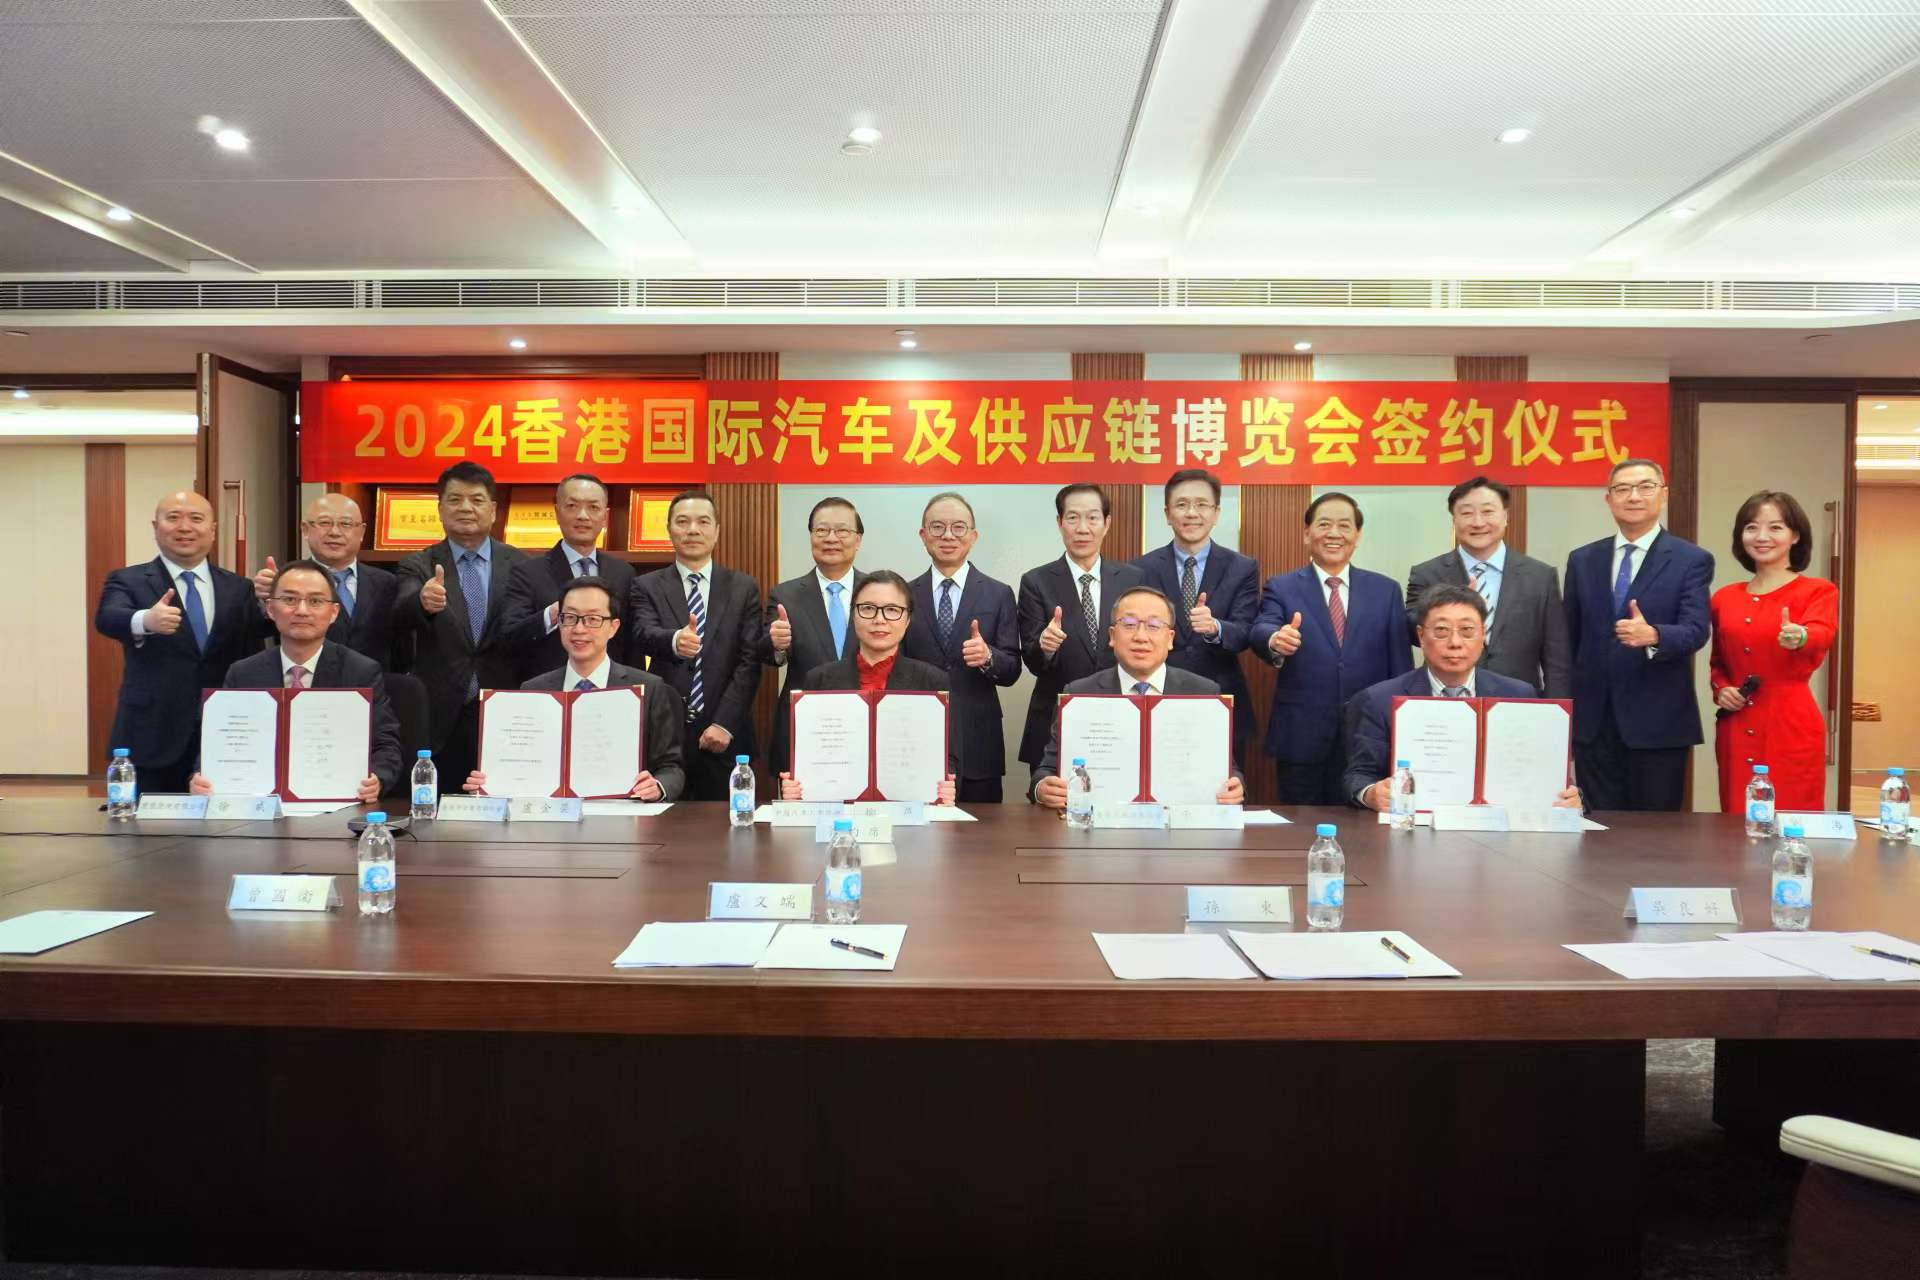 2024香港国际汽车及供应链博览会”合作协议签约仪式成功举行